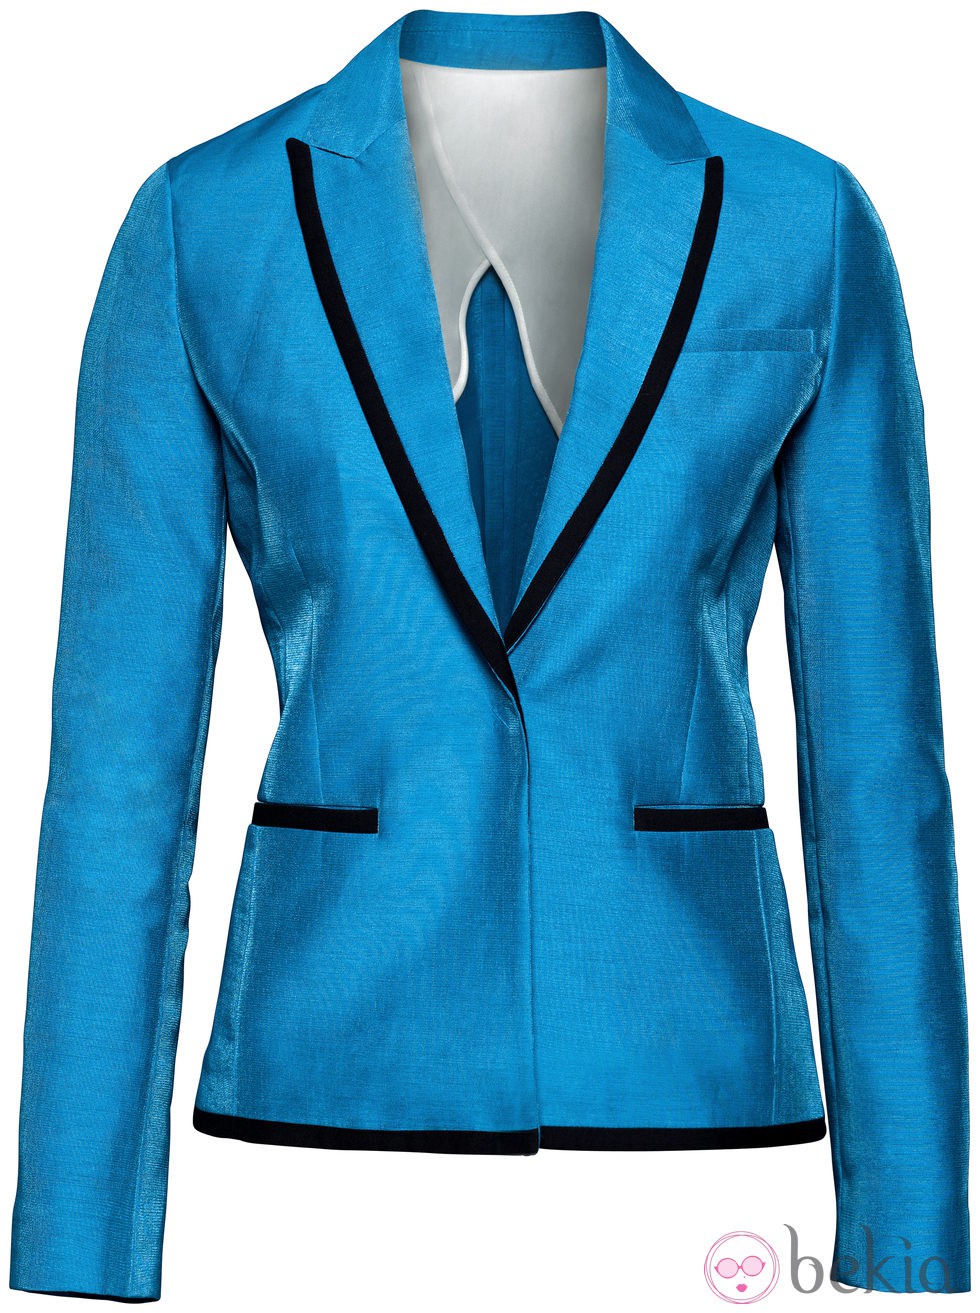 Blazer azul de la nueva colección H&M Conscious